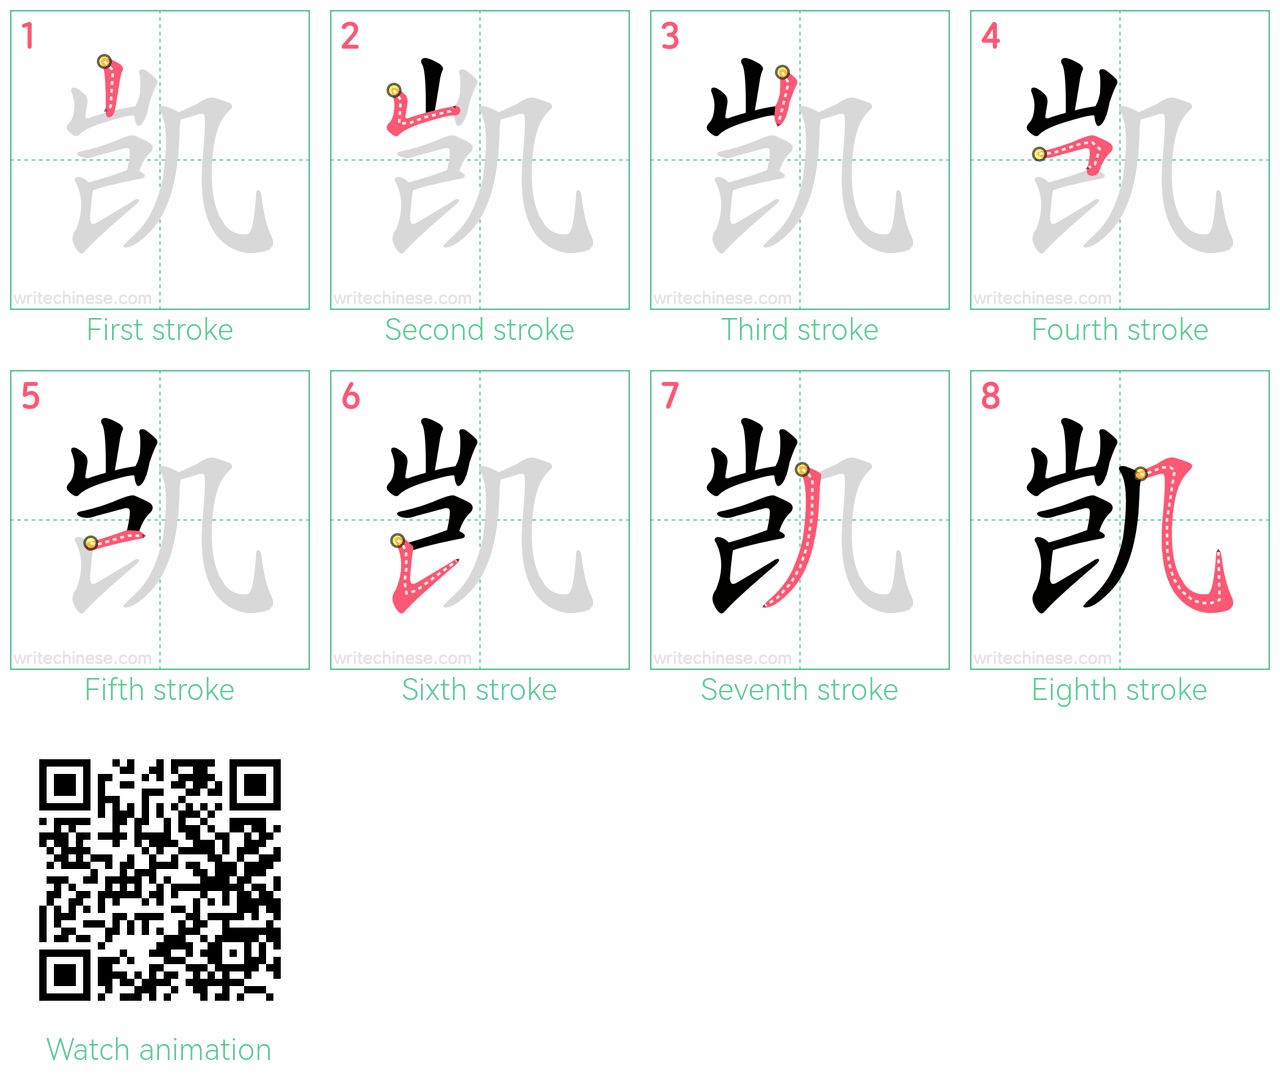 凯 step-by-step stroke order diagrams